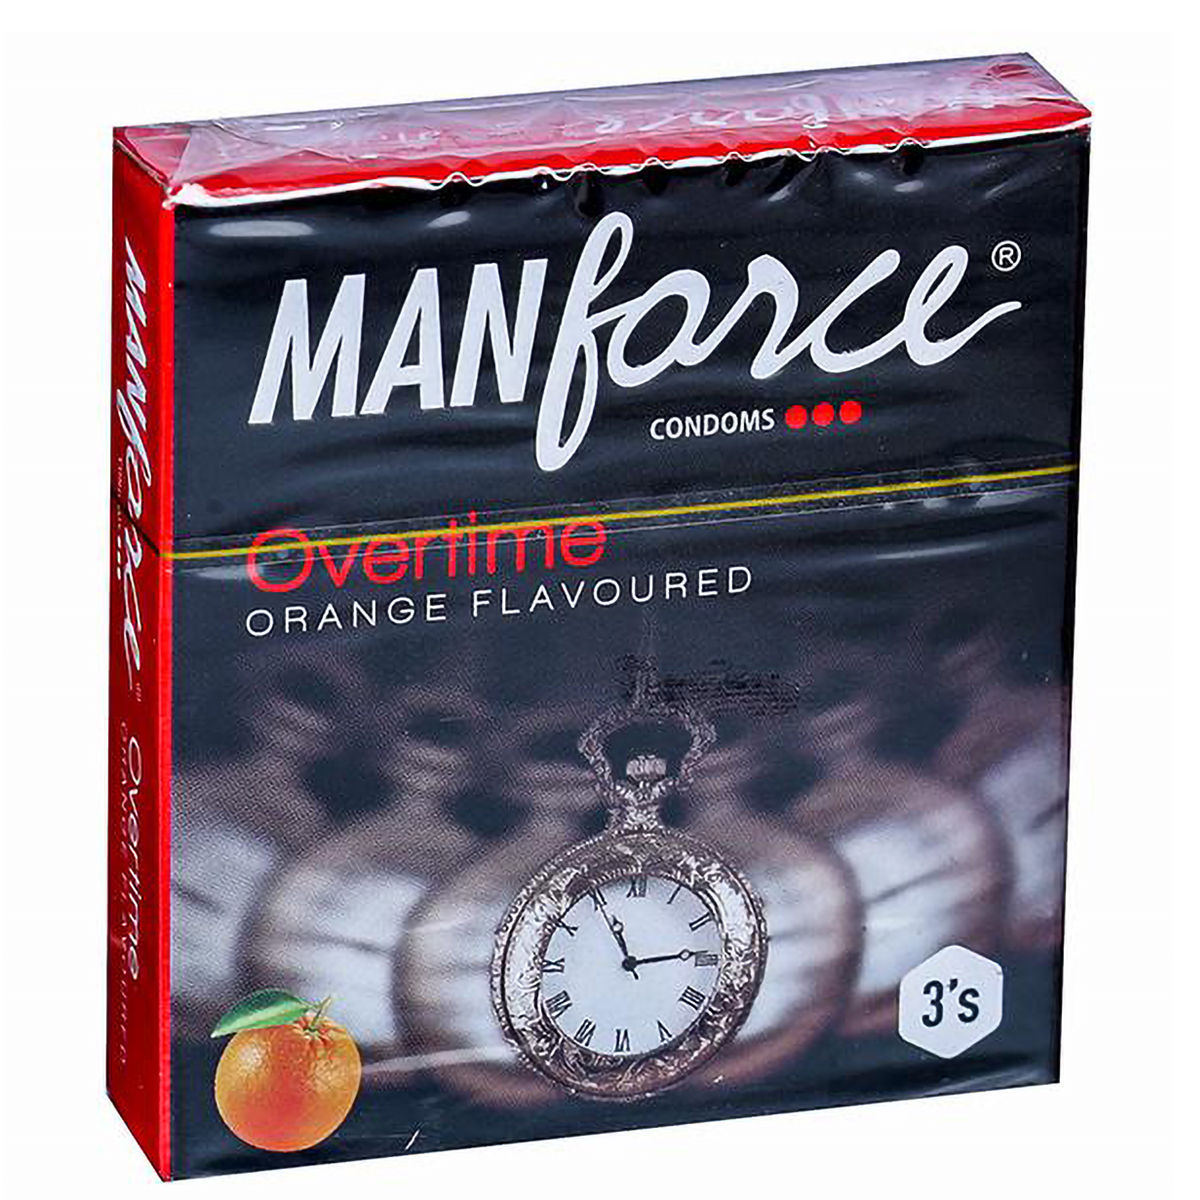 Buy Manforce Overtime 3 In 1 Orange Flavoured Condoms, 3 Count Online